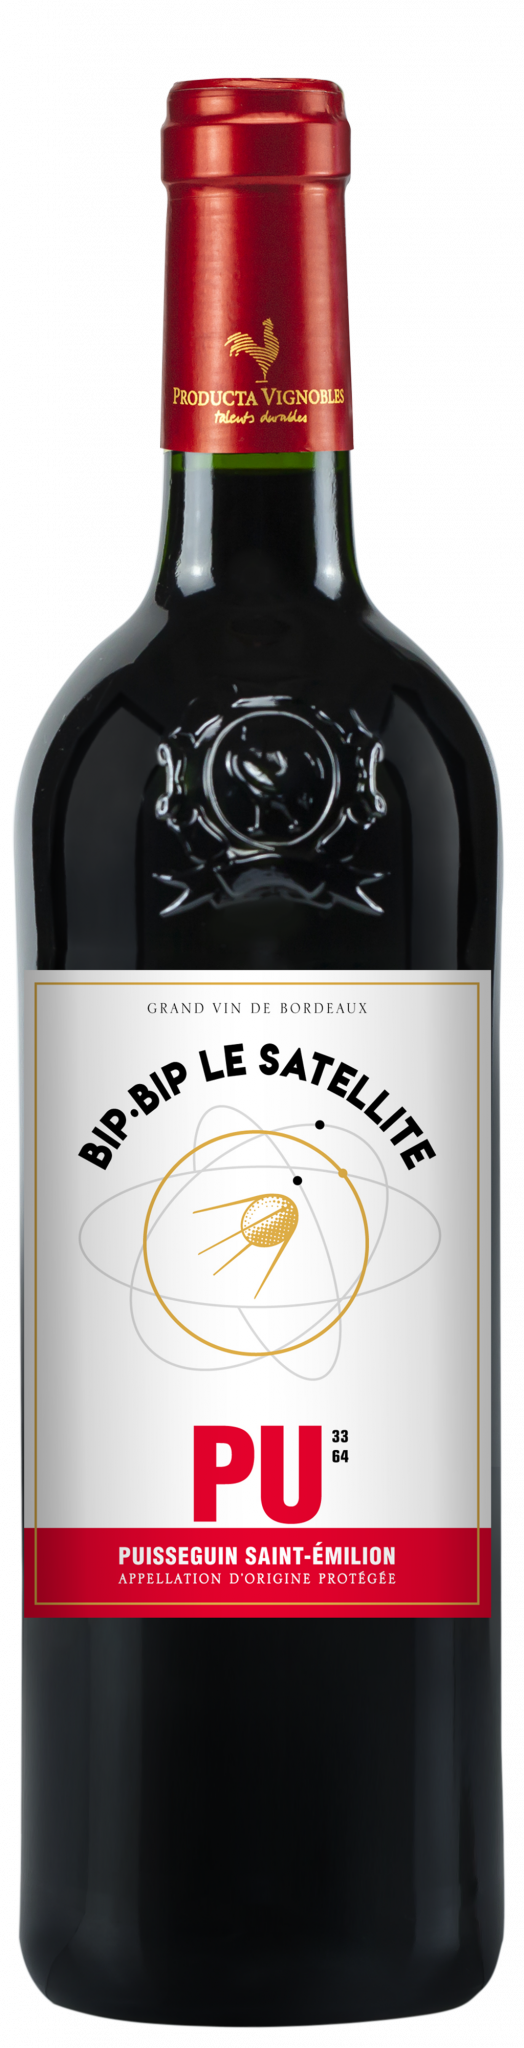 Bip Bip Le Satellite, AOP Puisseguin-Saint-Emilion, Rouge, 2022 - Producta  Vignobles